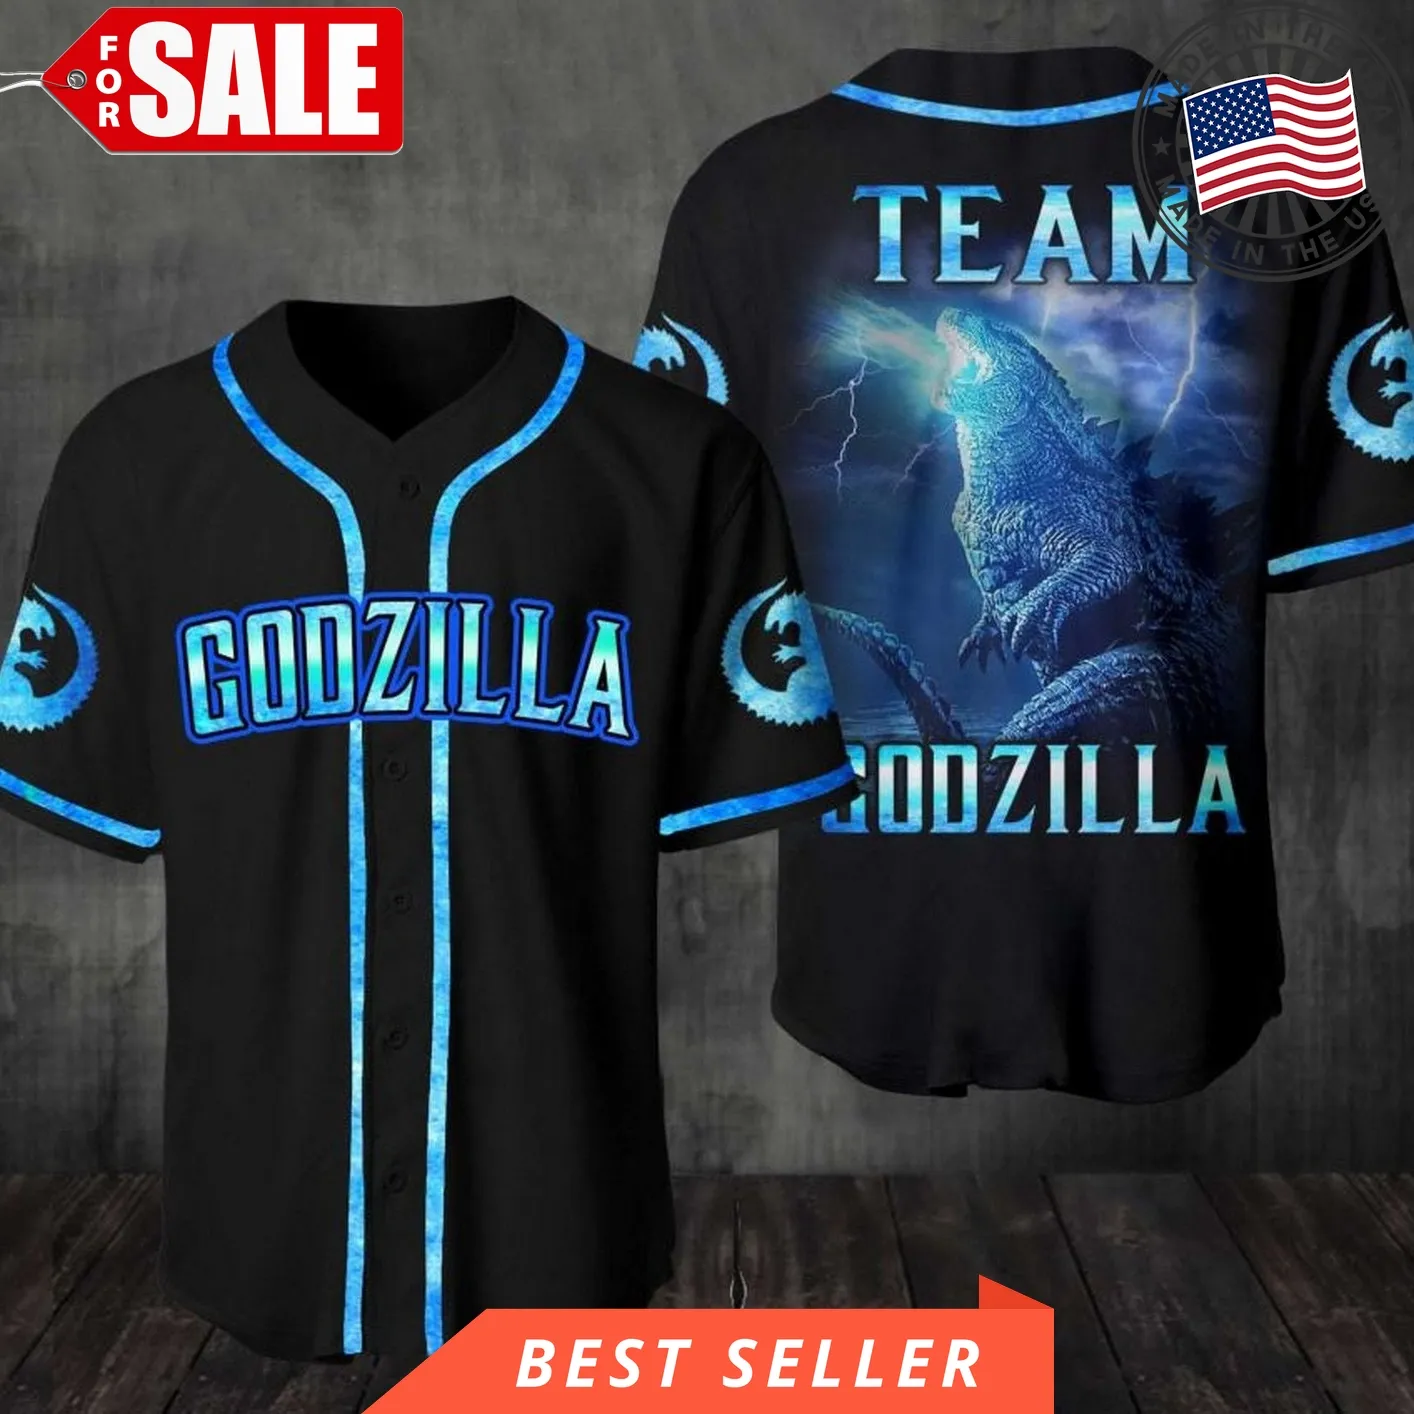 Godzilla Jersey Expression Funny Baseball Jersey